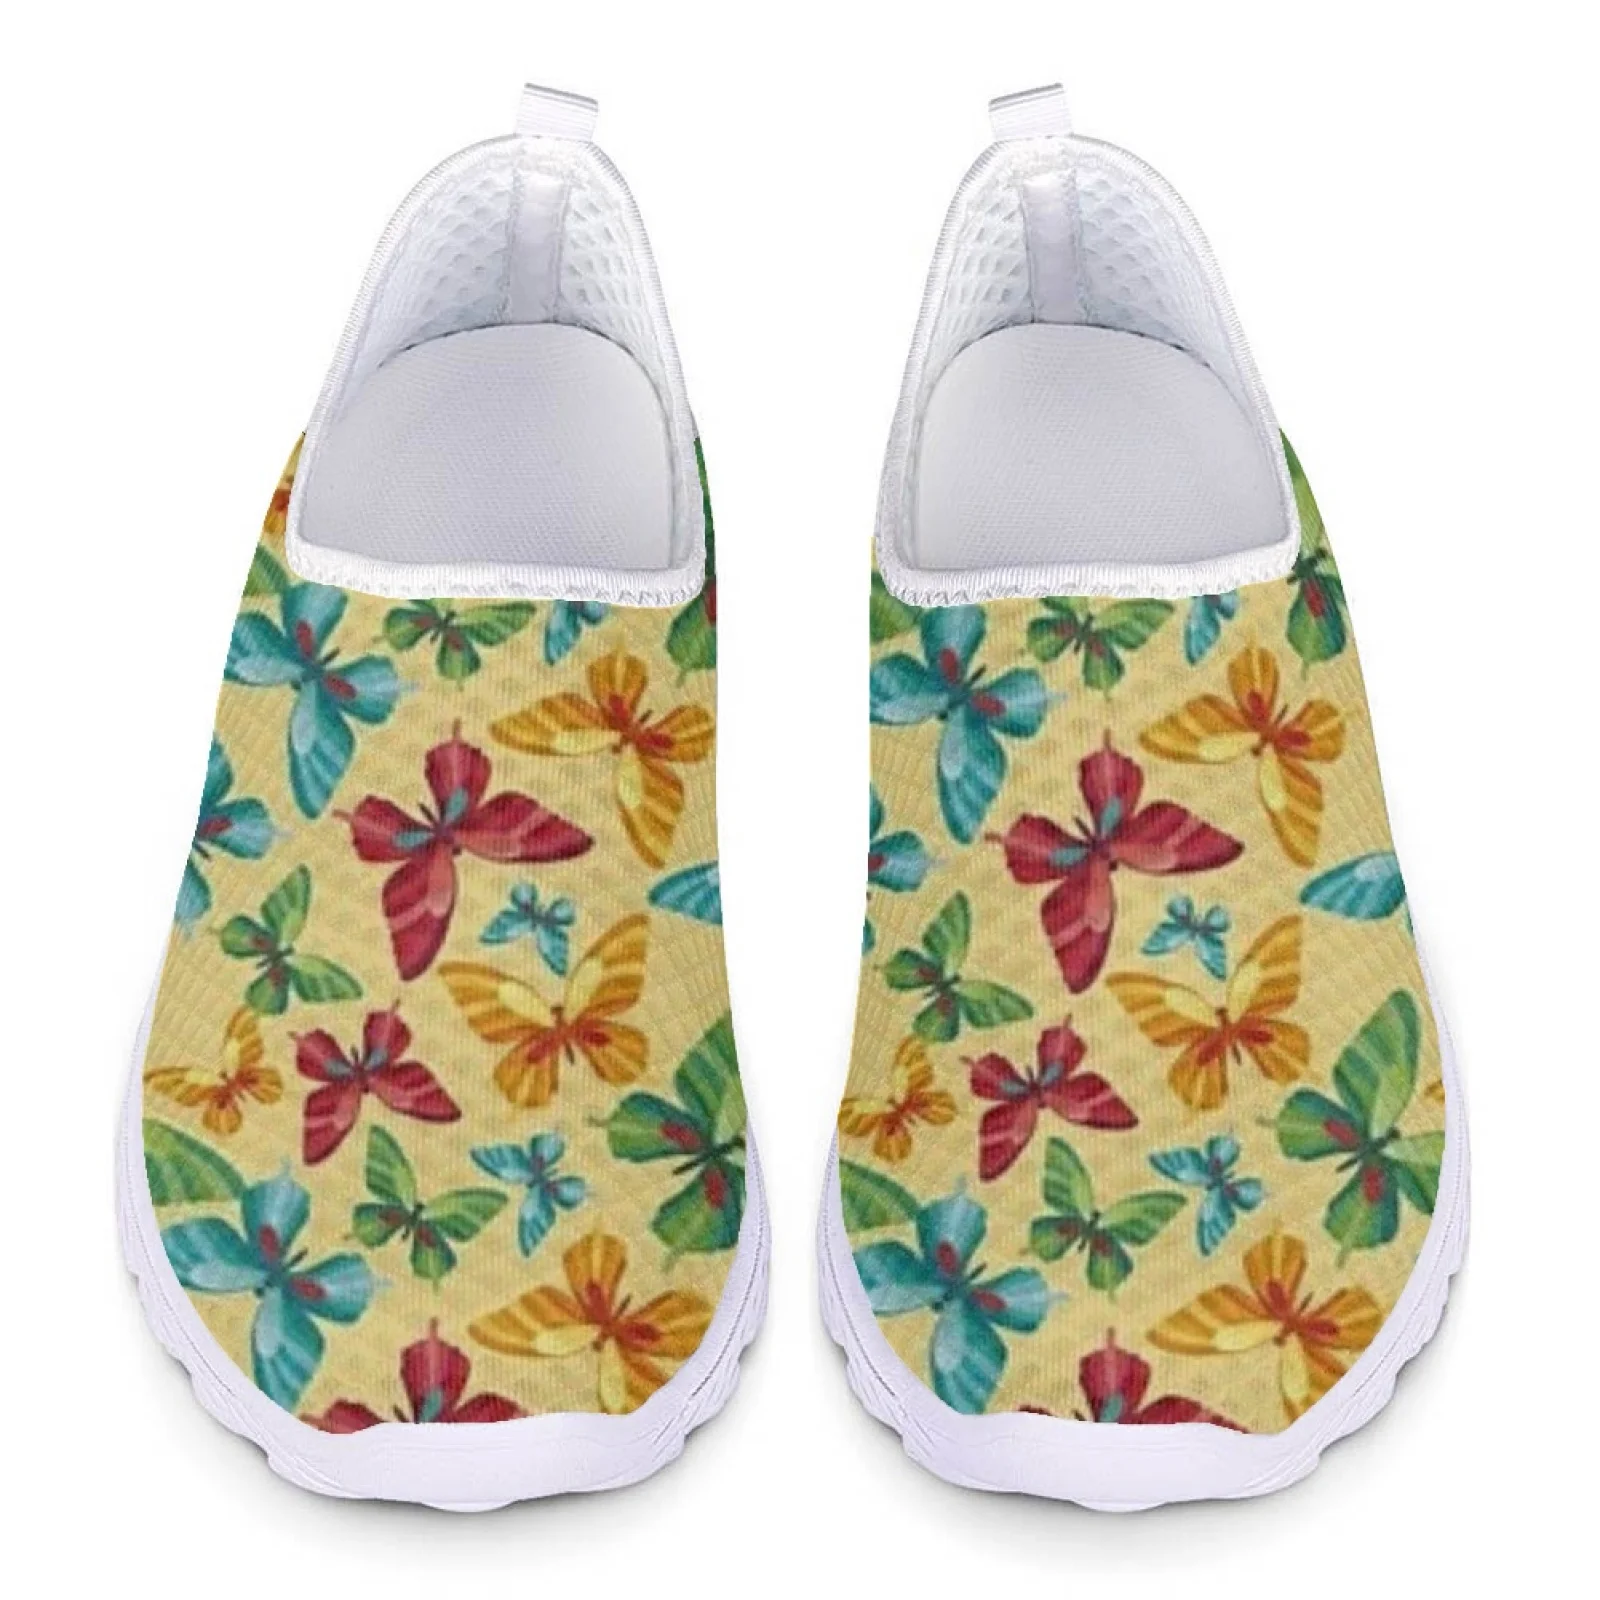 

Женские легкие кроссовки INSTANTARTS, легкие дышащие кроссовки из сетчатого материала с радужным принтом бабочки, удобная прогулочная обувь на плоской подошве для лета